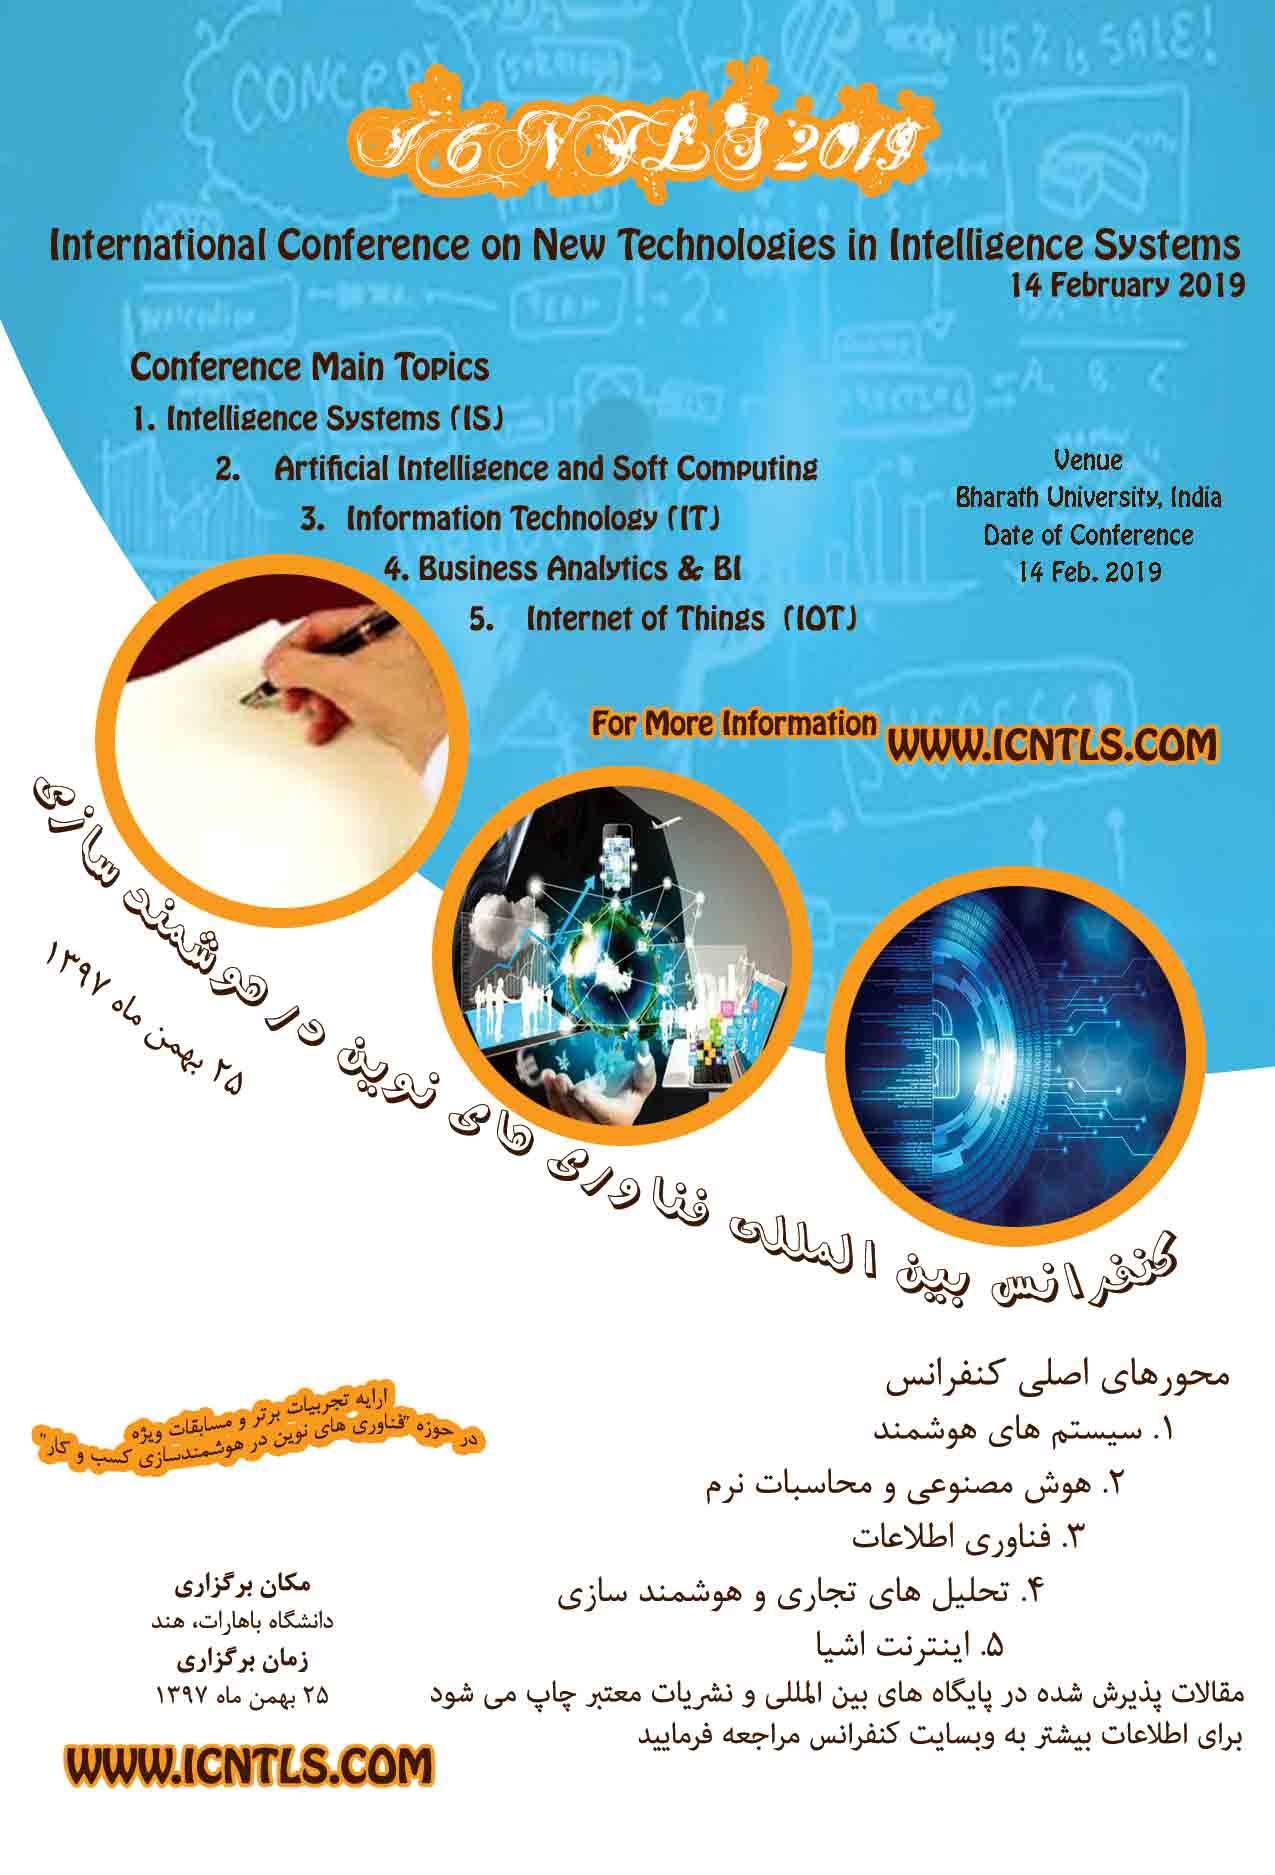 پوستر کنفرانس بین المللی فناوری های نوین در سیستم های هوشمند